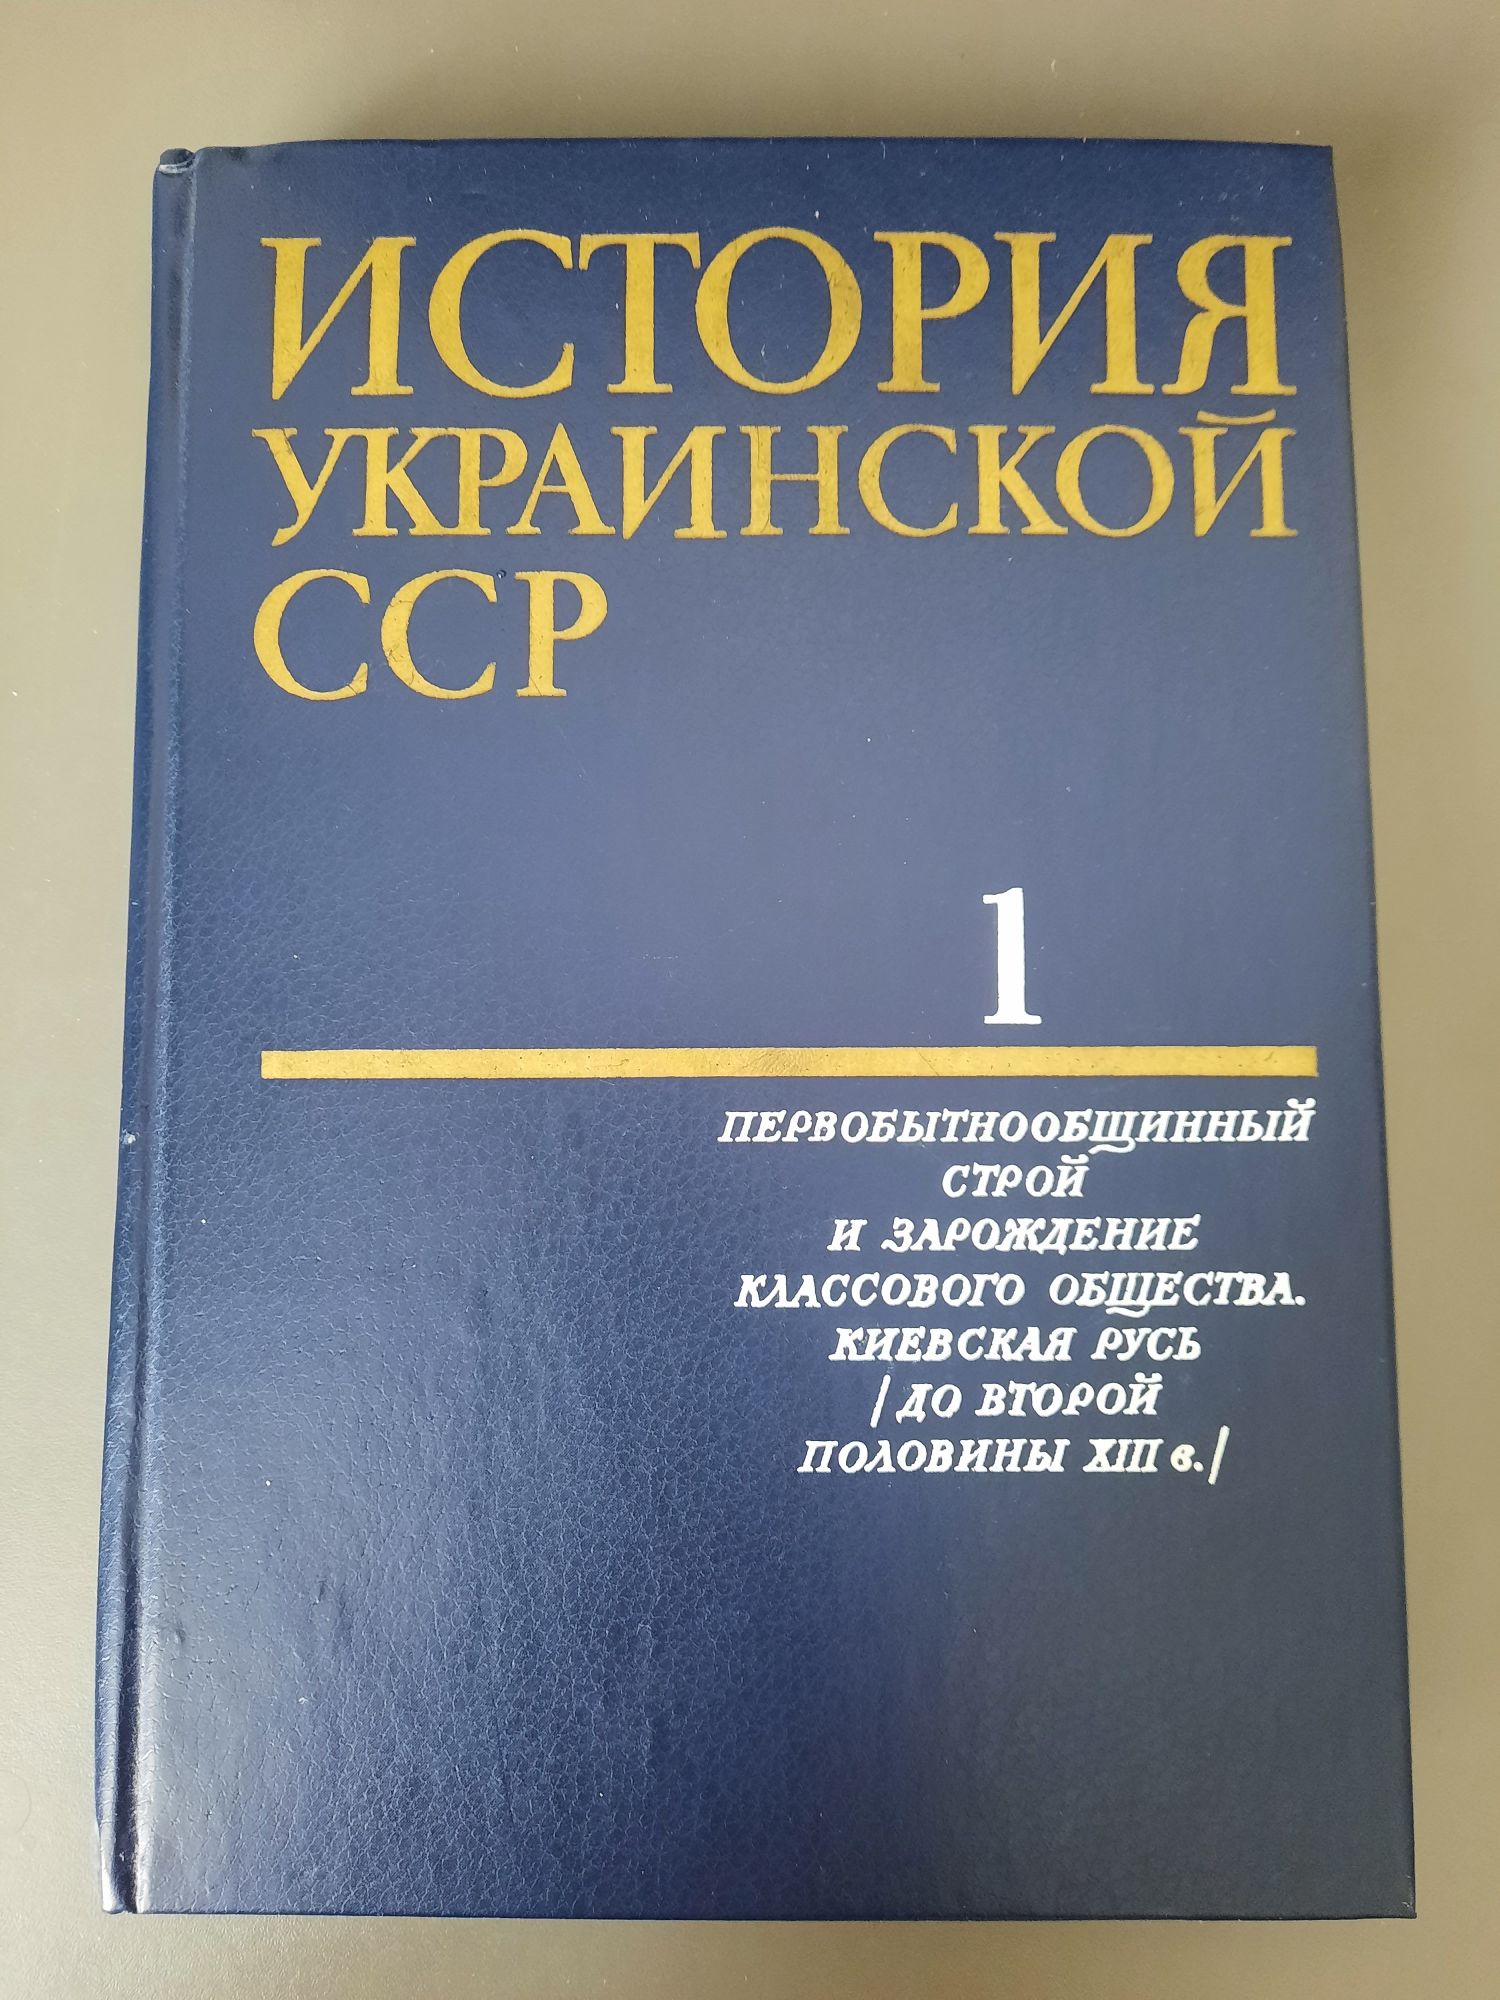 История Украинской ССР в 10 томах